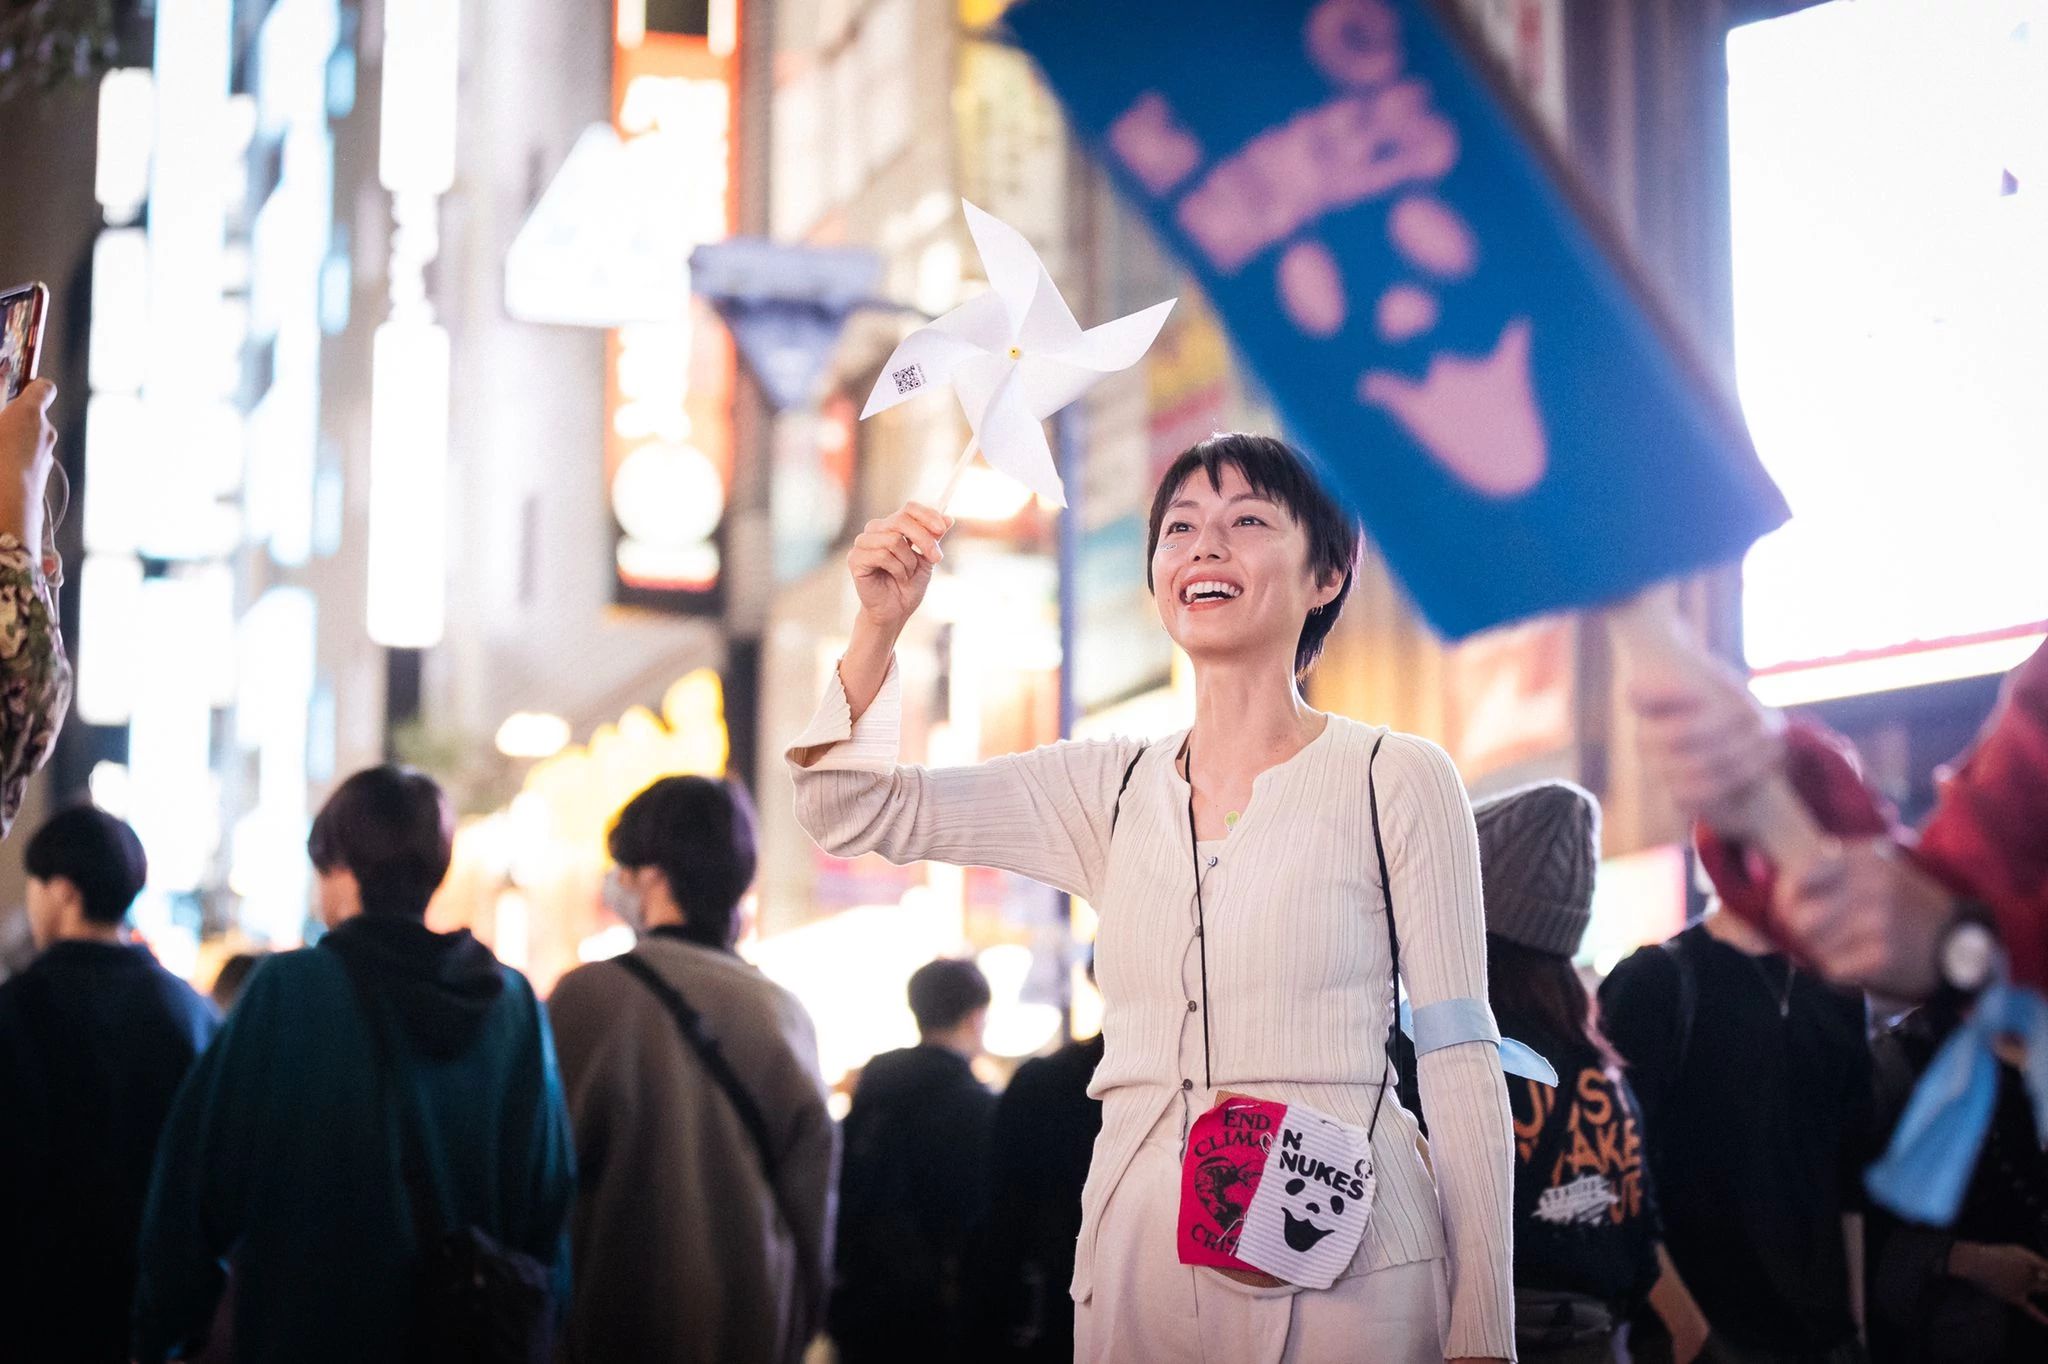 Tokyo, Jepang, 3 November: lebih dari 800 pengunjuk rasa antusias berkumpul di Stasiun Shinjuku, menyatukan suara dalam sebuah lagu tentang iklim dengan pesan kuat yang bergema ke seluruh penjuru kota. Aksi ini diadakan oleh Organized by 350 Japan berkolaborasi dengan We Want Our Future. Kredit foto: Jun Yokoyama